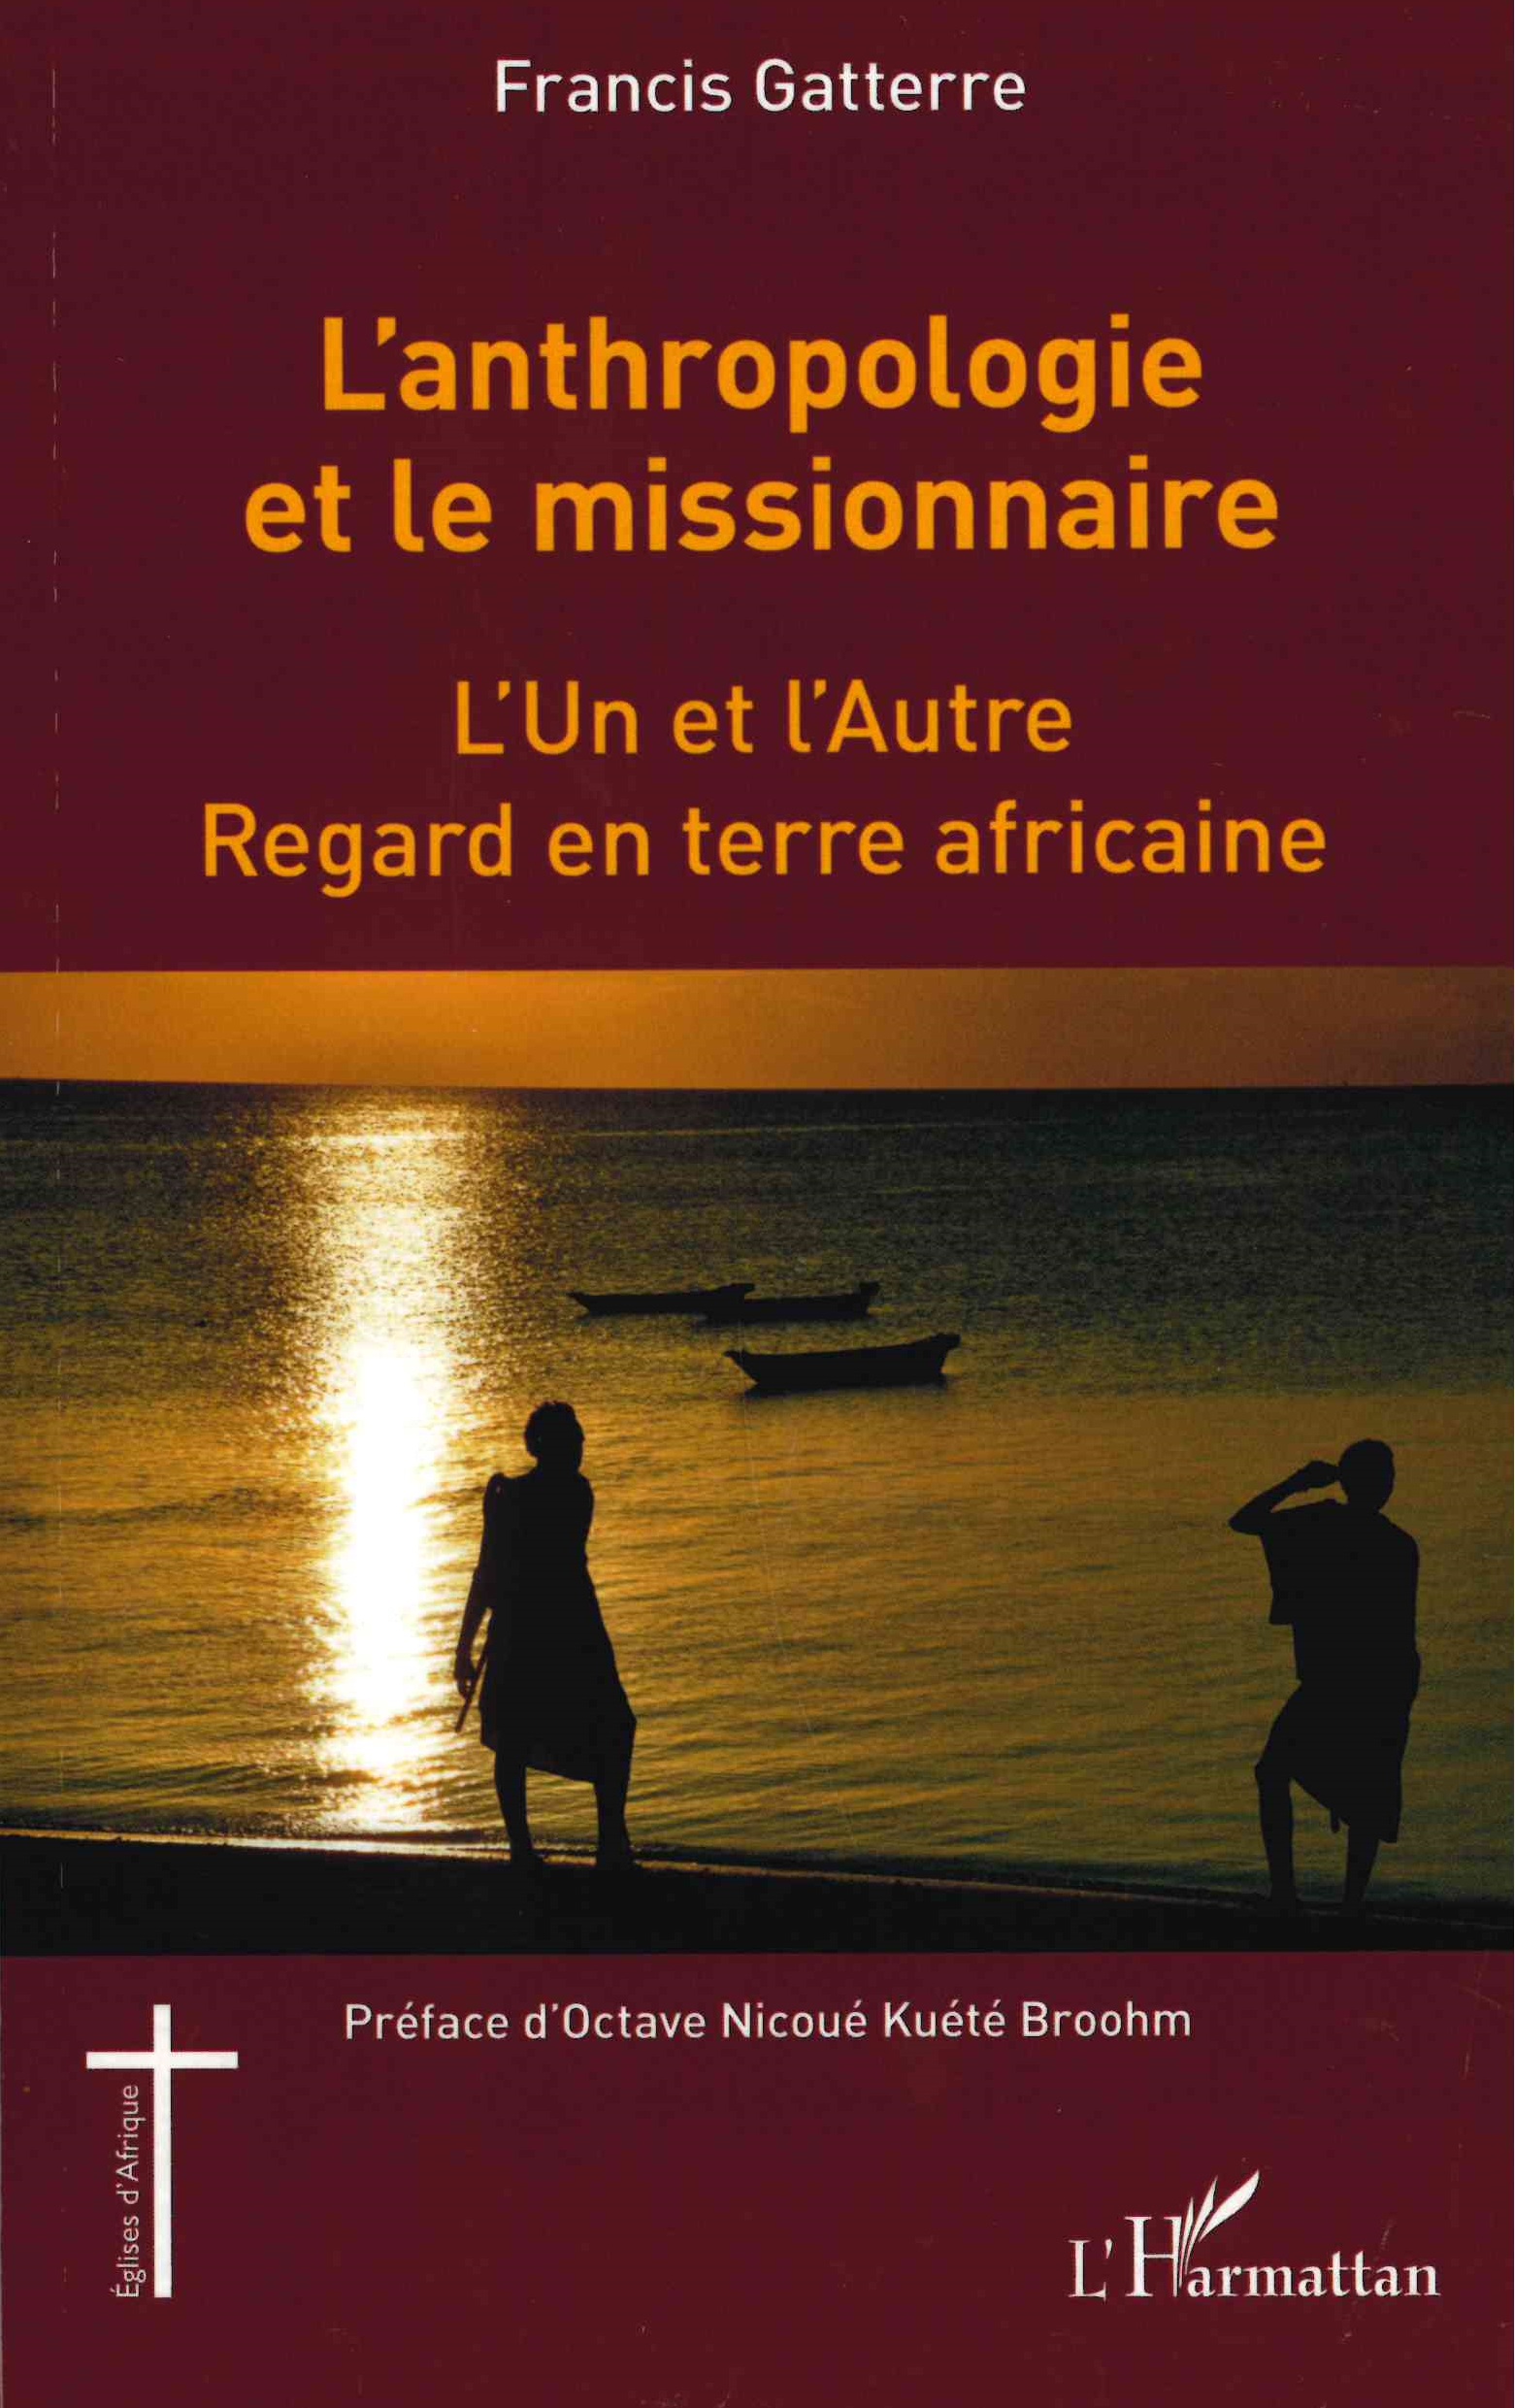 Gatterre (Francis), L'anthropologie et le missionnaire : l'un et l'autre : regard en terre africaine